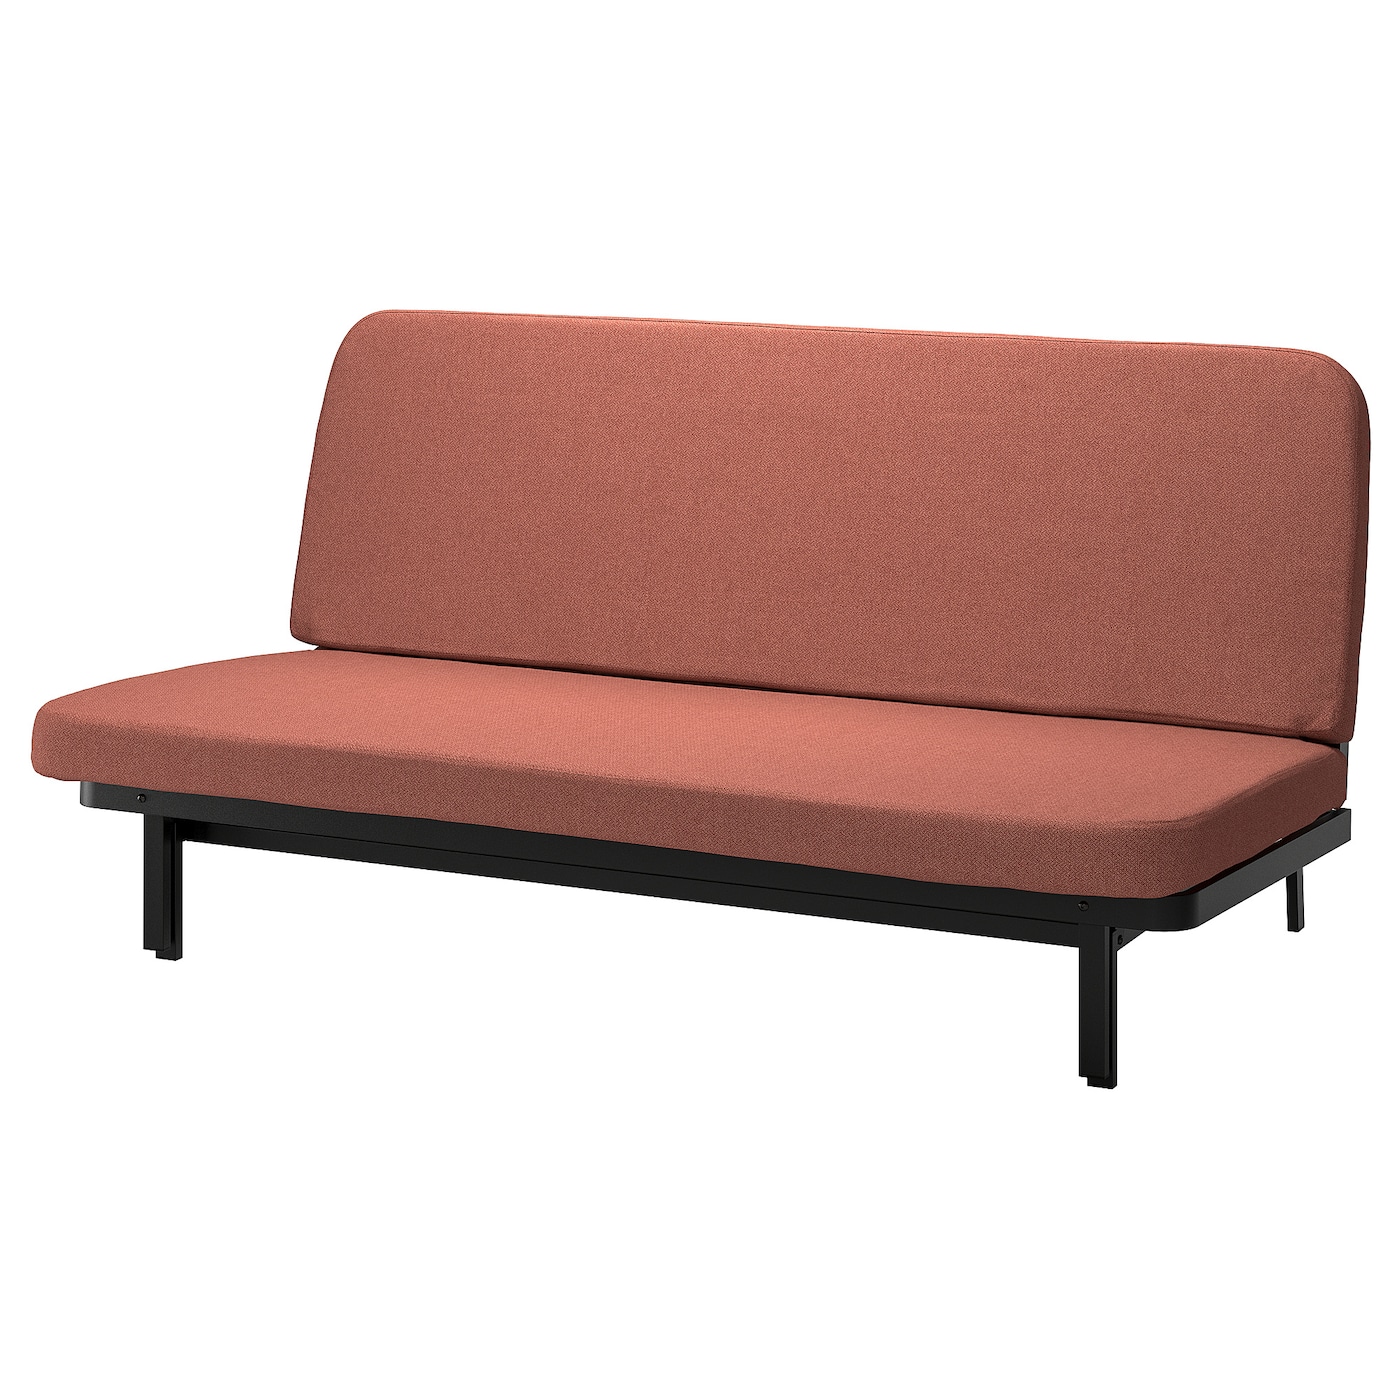 диван кровать портленд коричневый экокожа NYHAMN 3-местный диван-кровать, поролоновый матрас в комплекте/Скартофта красный/коричневый IKEA